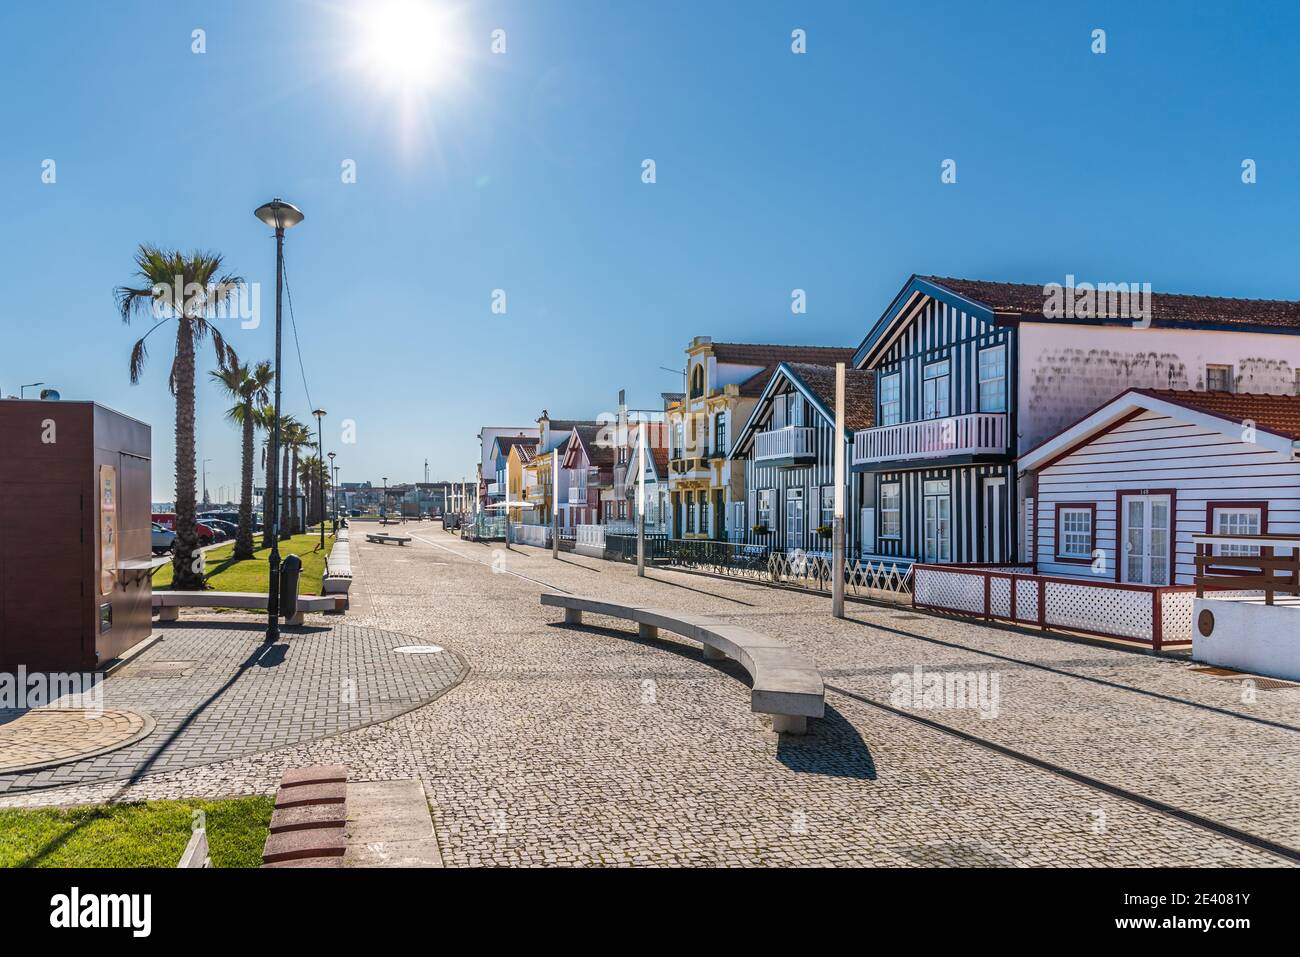 Image colorée rayures typiques Maisons à Costa Nova, Aveiro, Barra, Portugal Banque D'Images